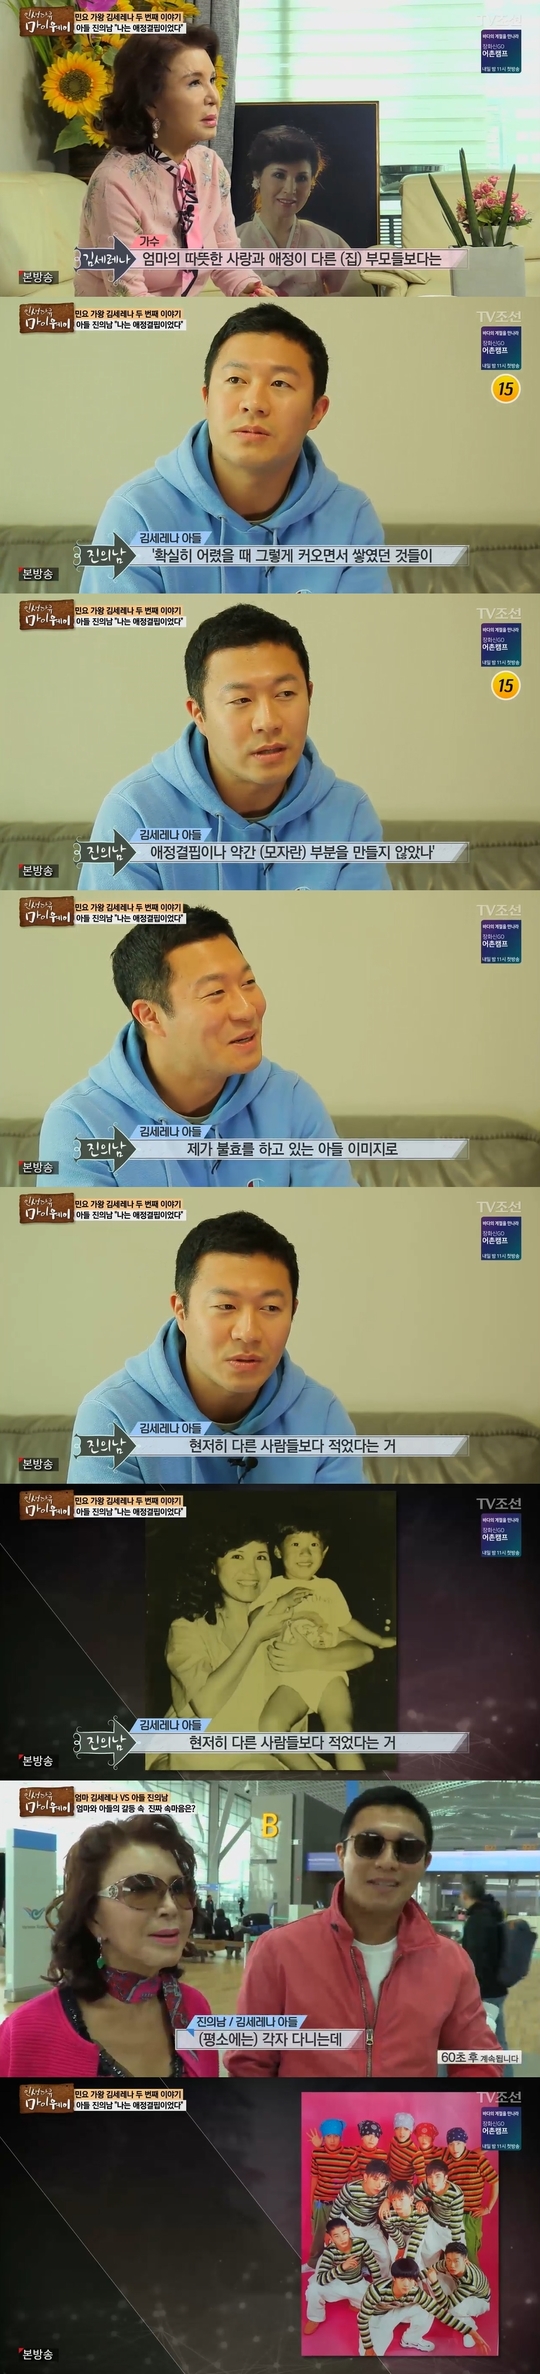 TV조선 ‘인생다큐 마이웨이’ 방송캡처